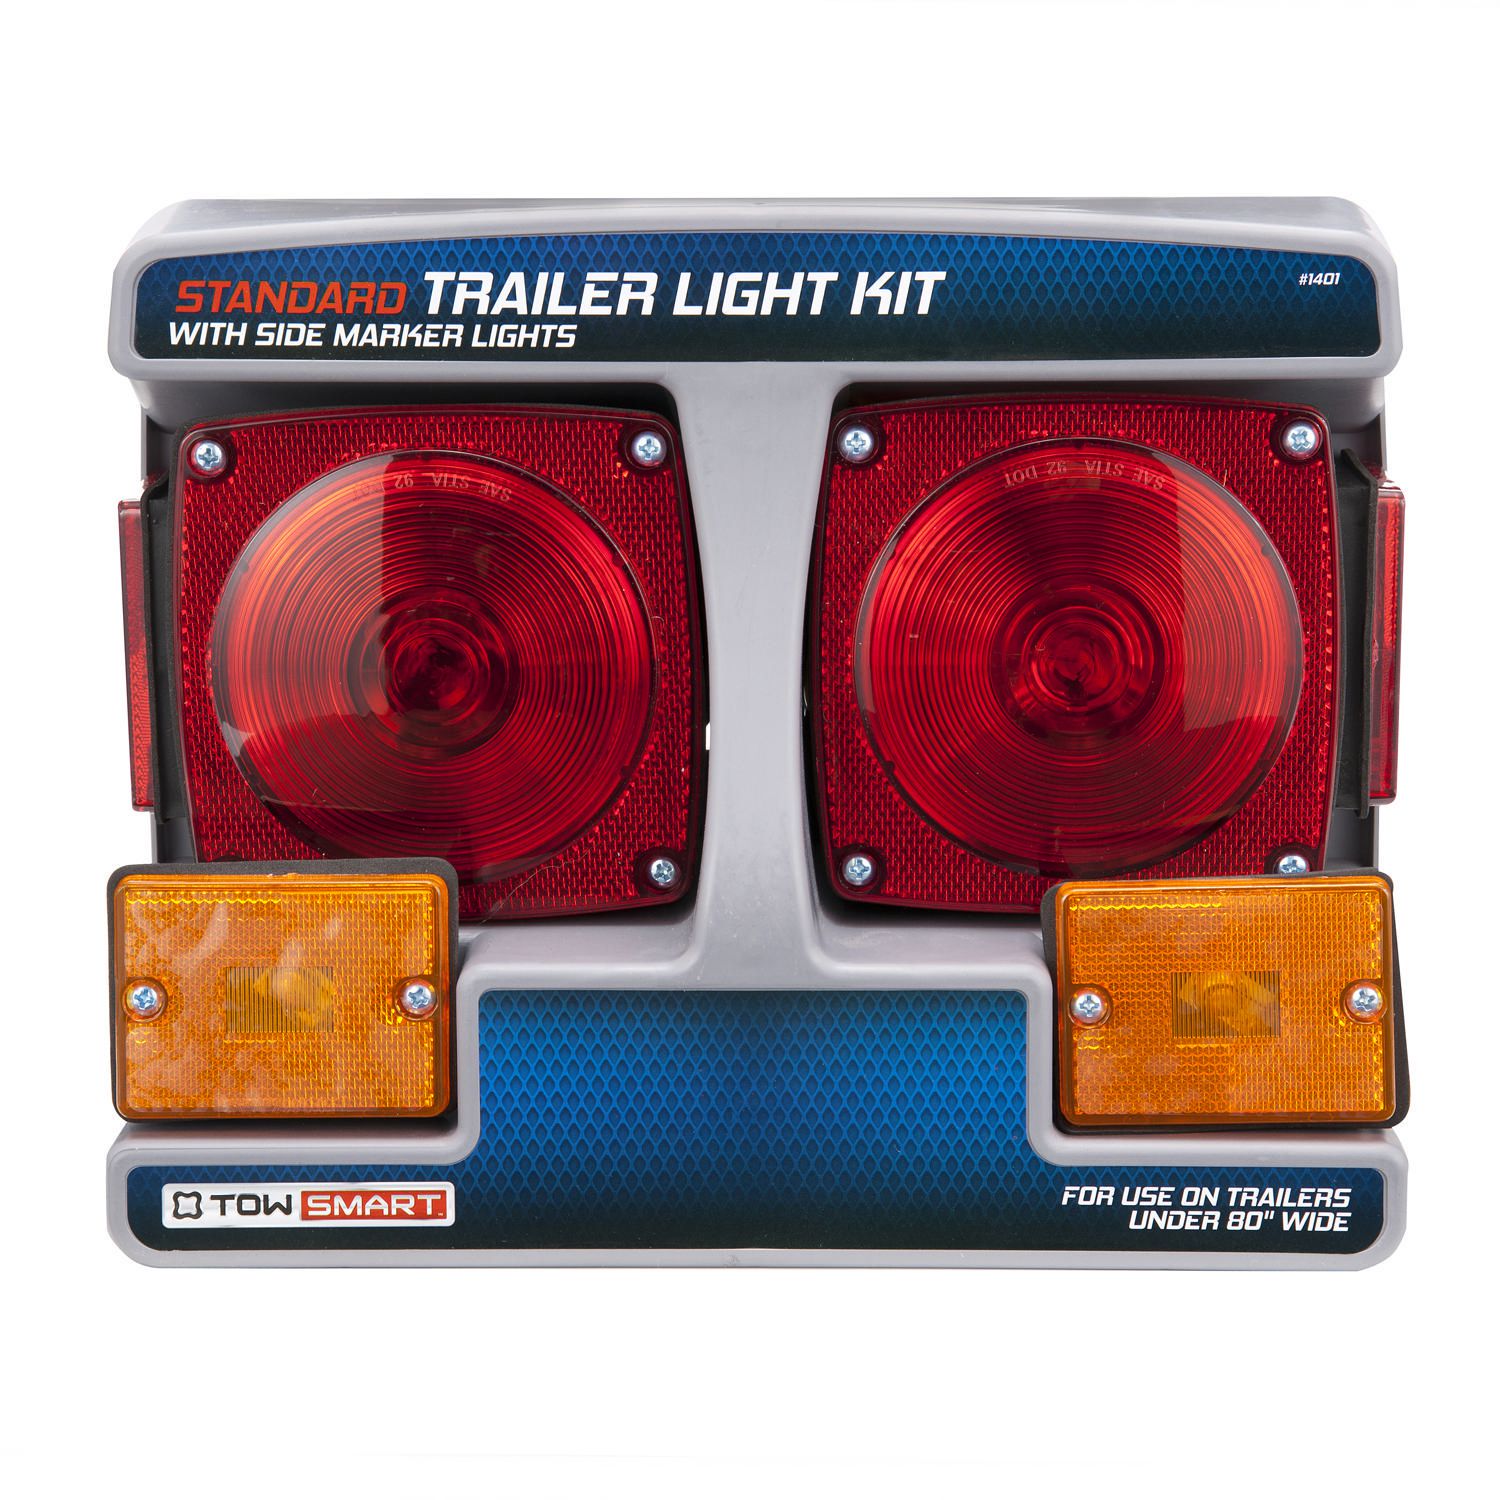 Standard Trailer Light Kit with Side Marker Lights Under 80